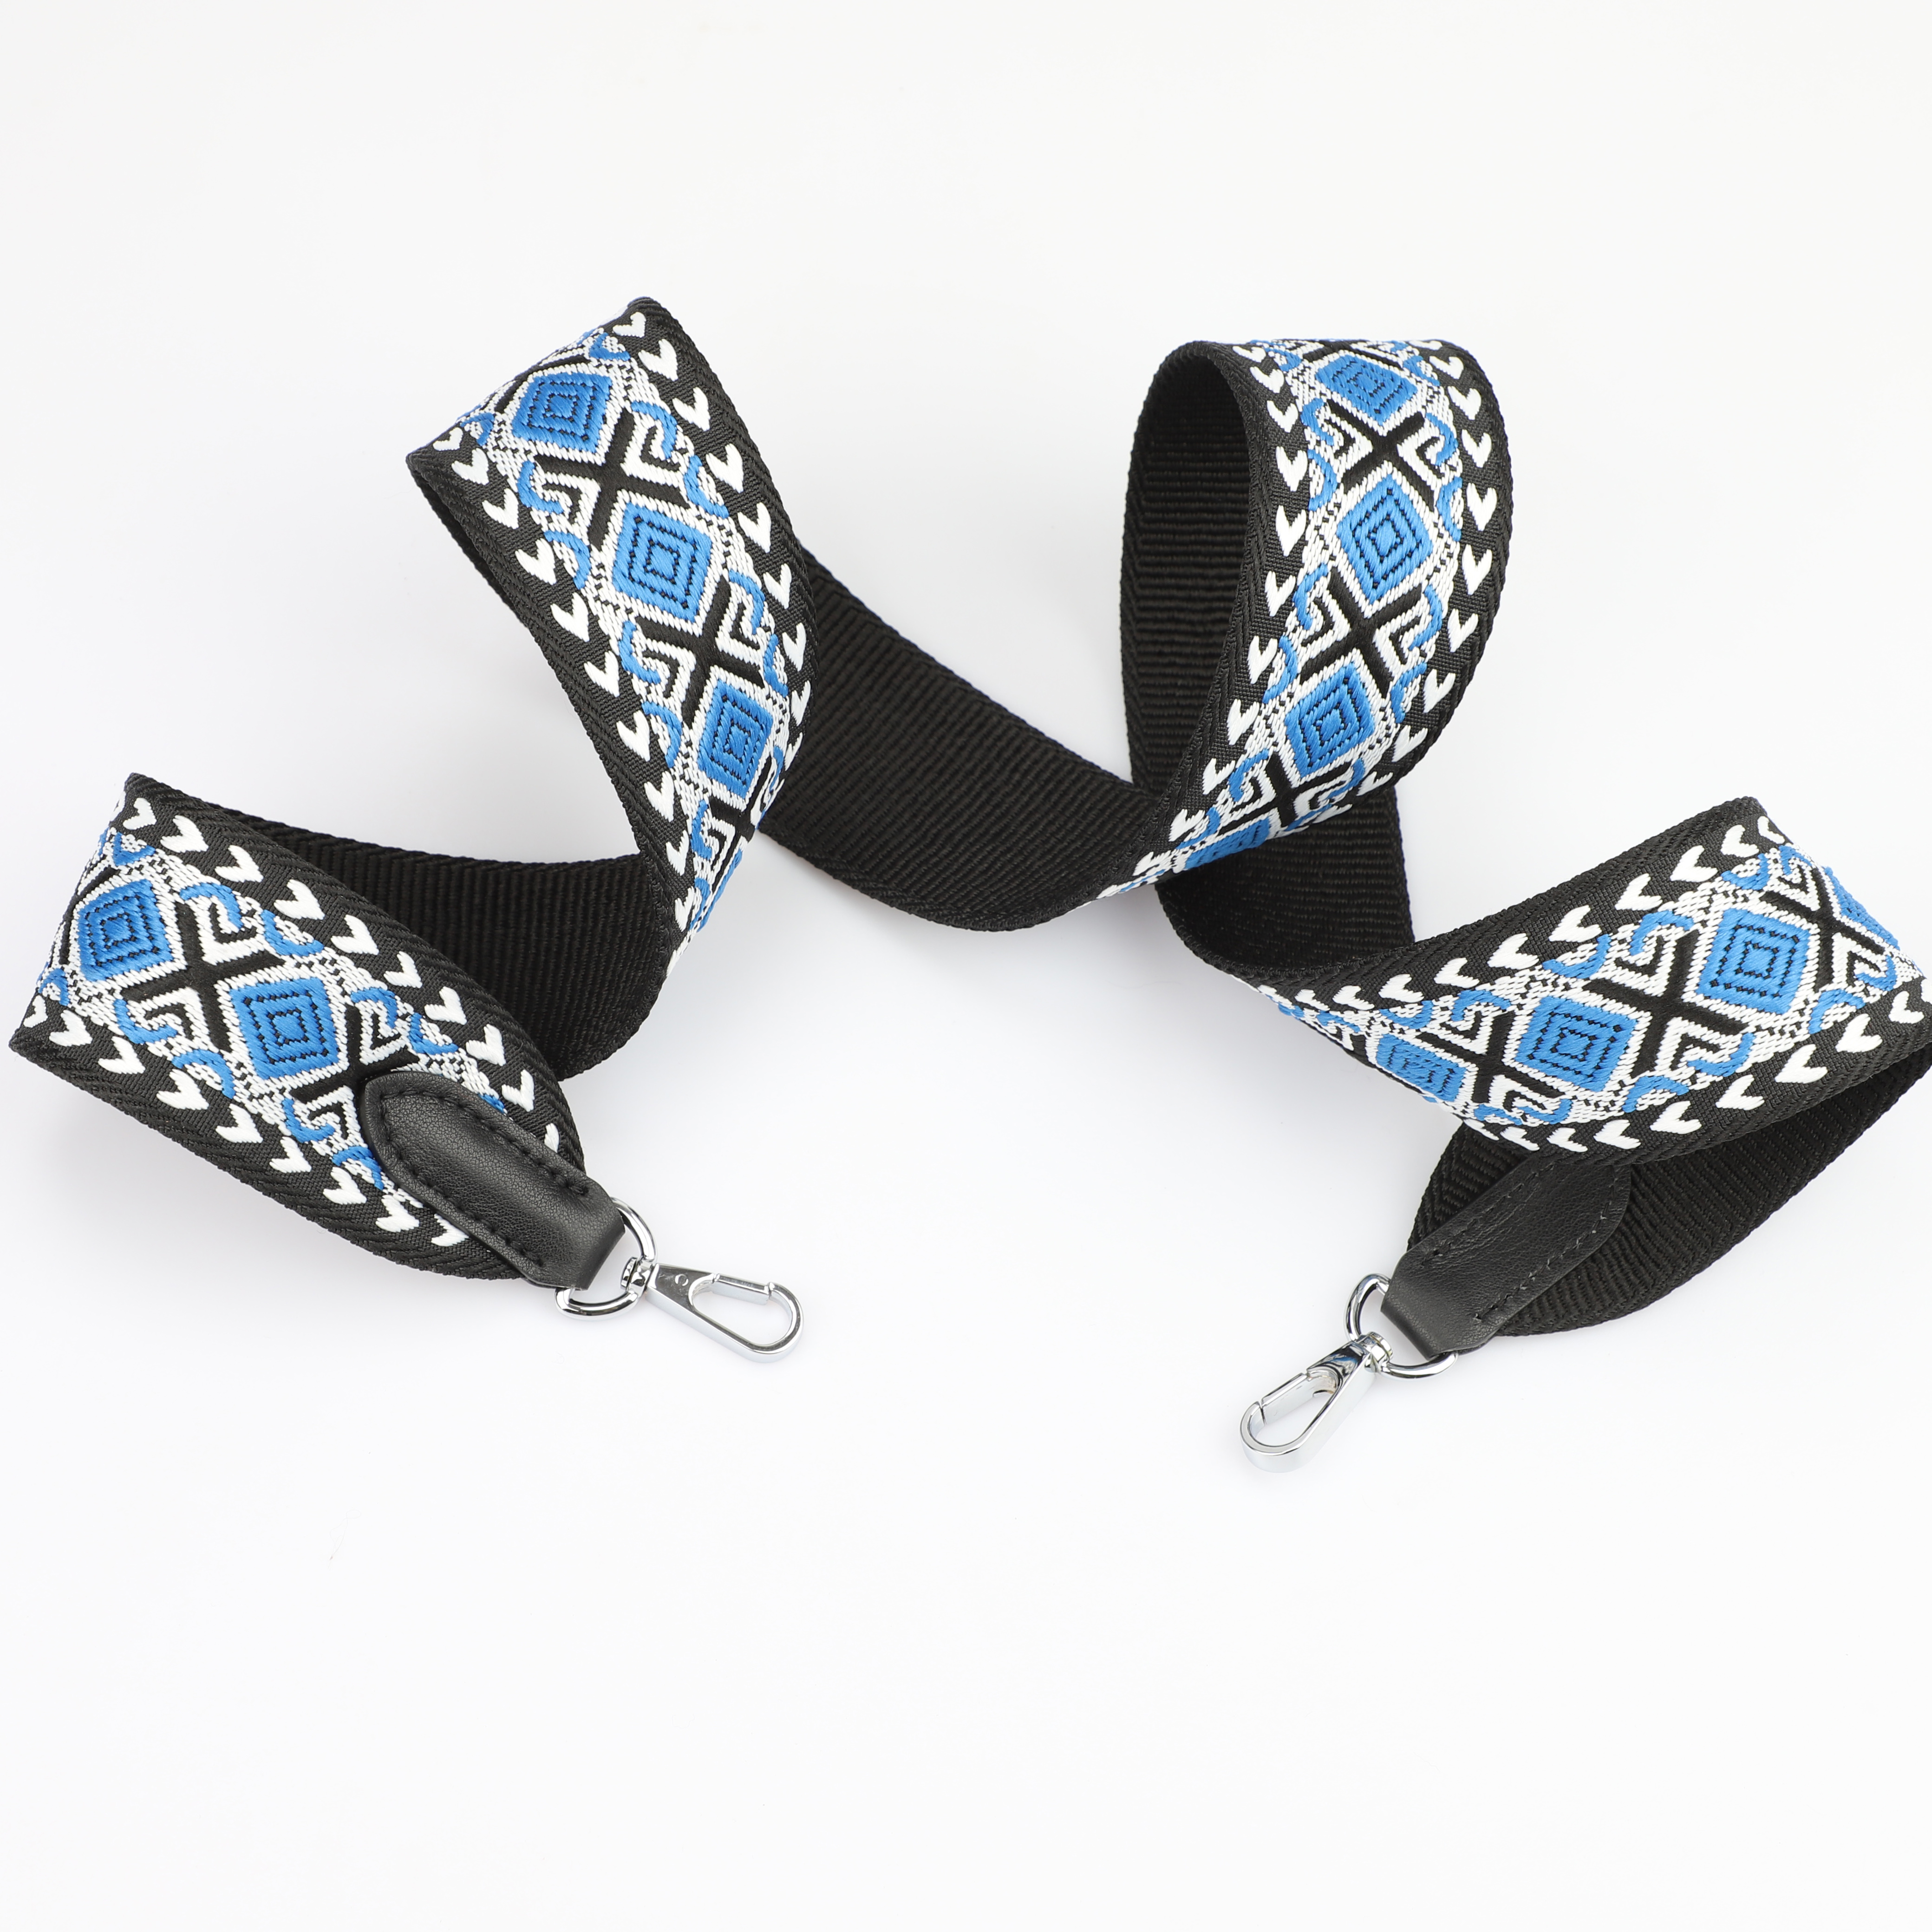 2 "Wide Blue, White and Black jacquard webbing shoulder strap